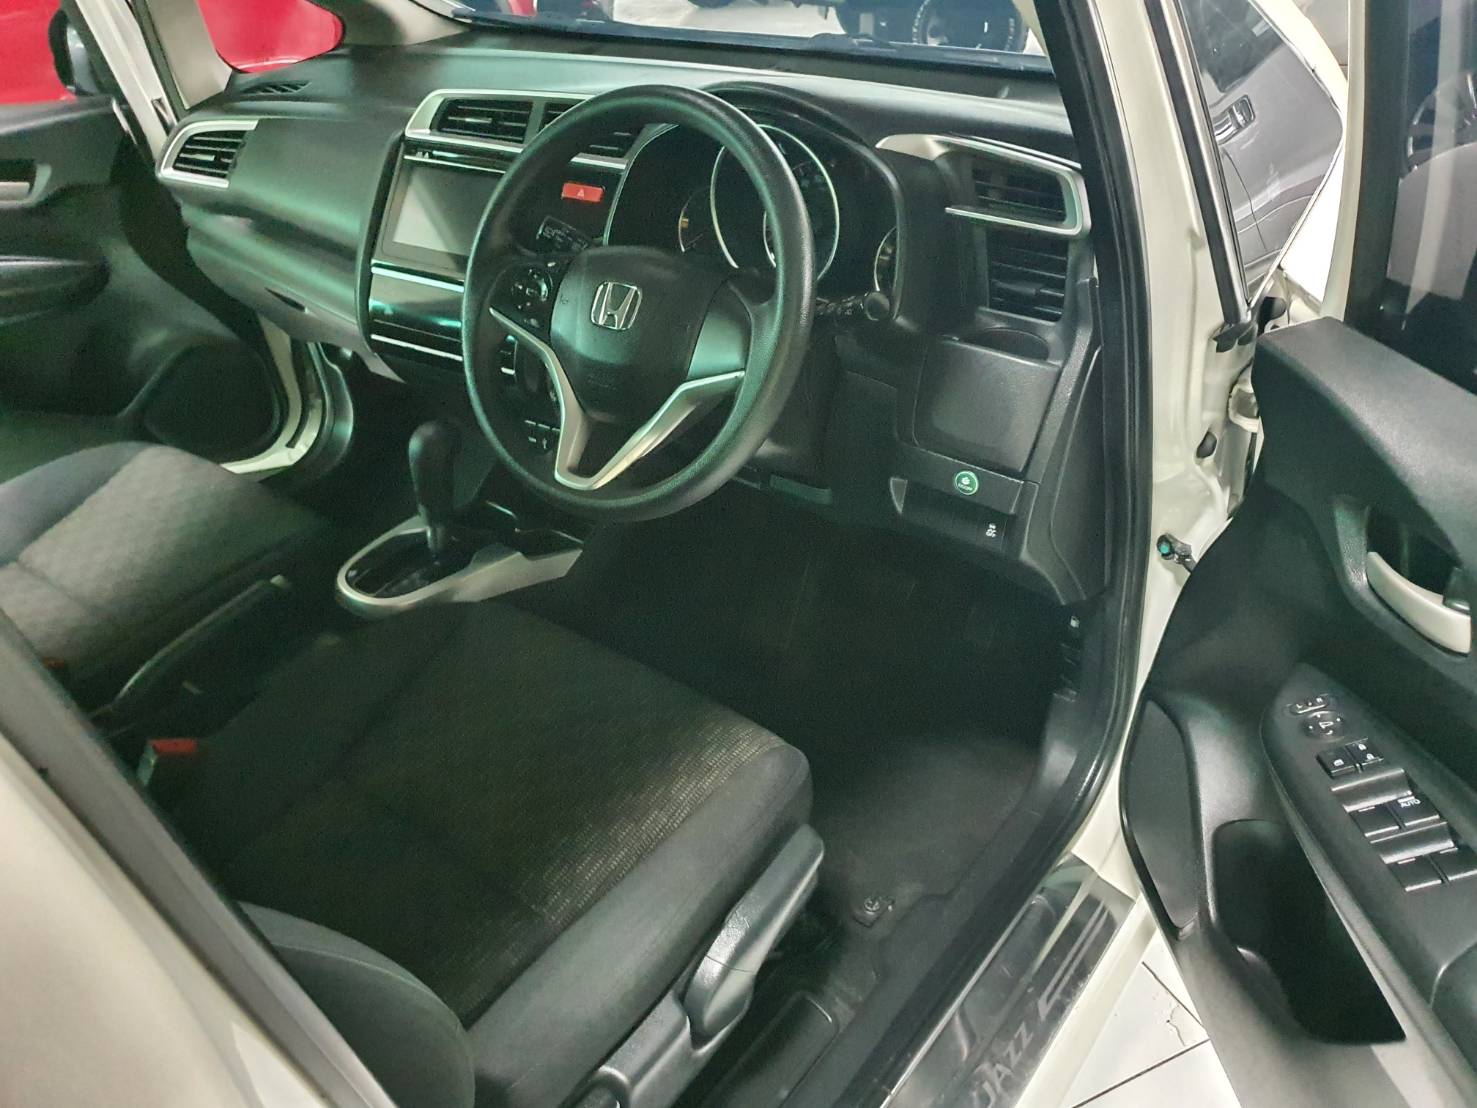 Honda Jazz 1.5V Auto ปี 2014 สีขาว มือ1 เช็คศูนย์